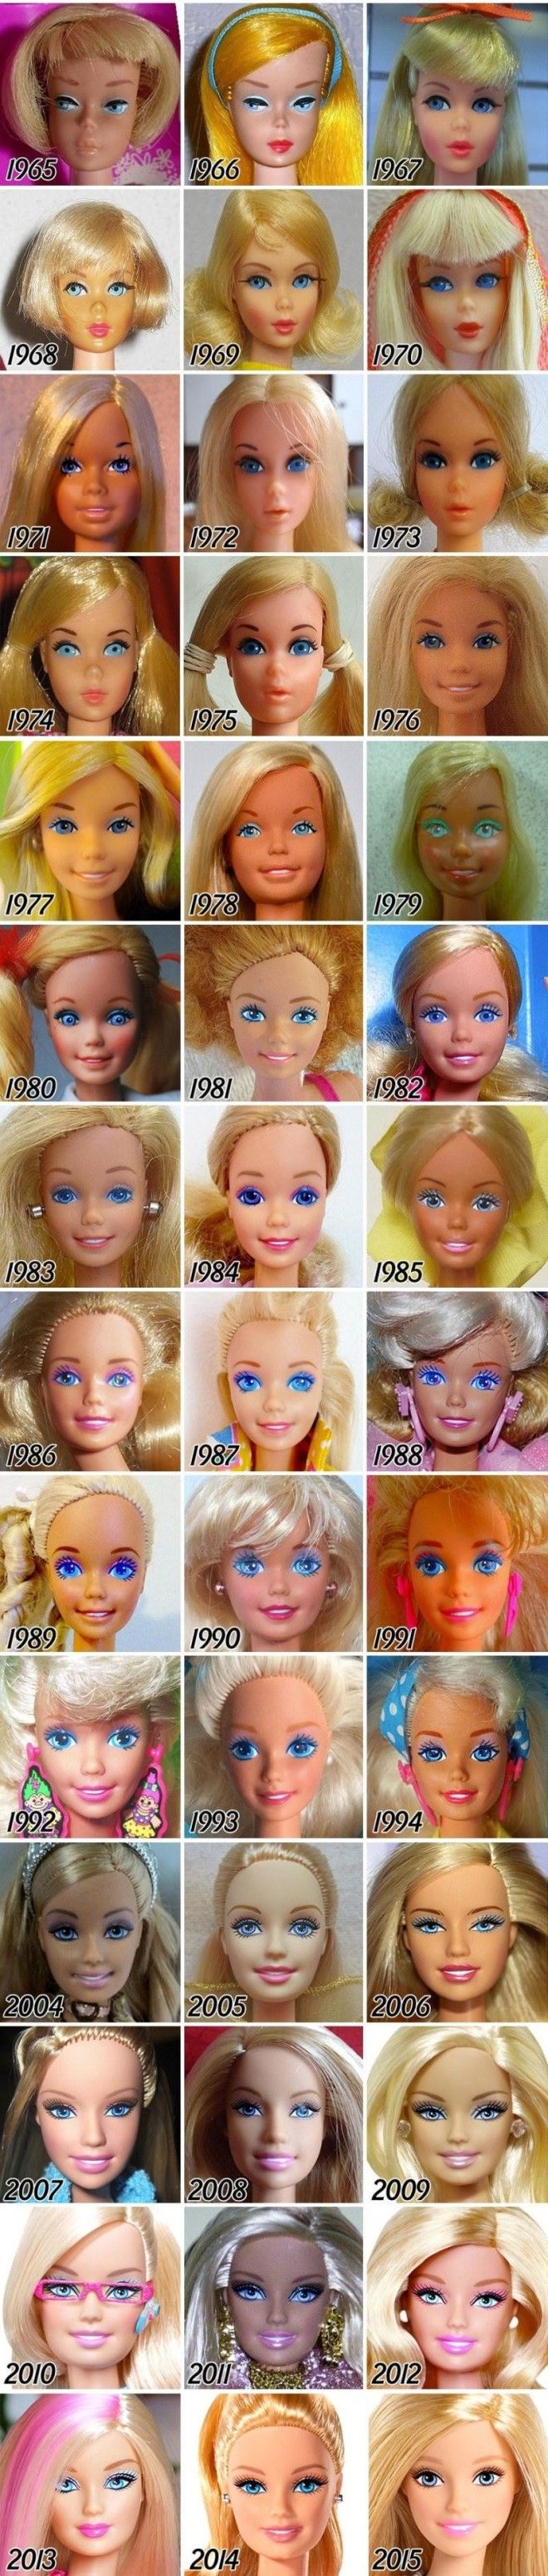 Эволюция куклы Барби с момента создания и до наших дней 4